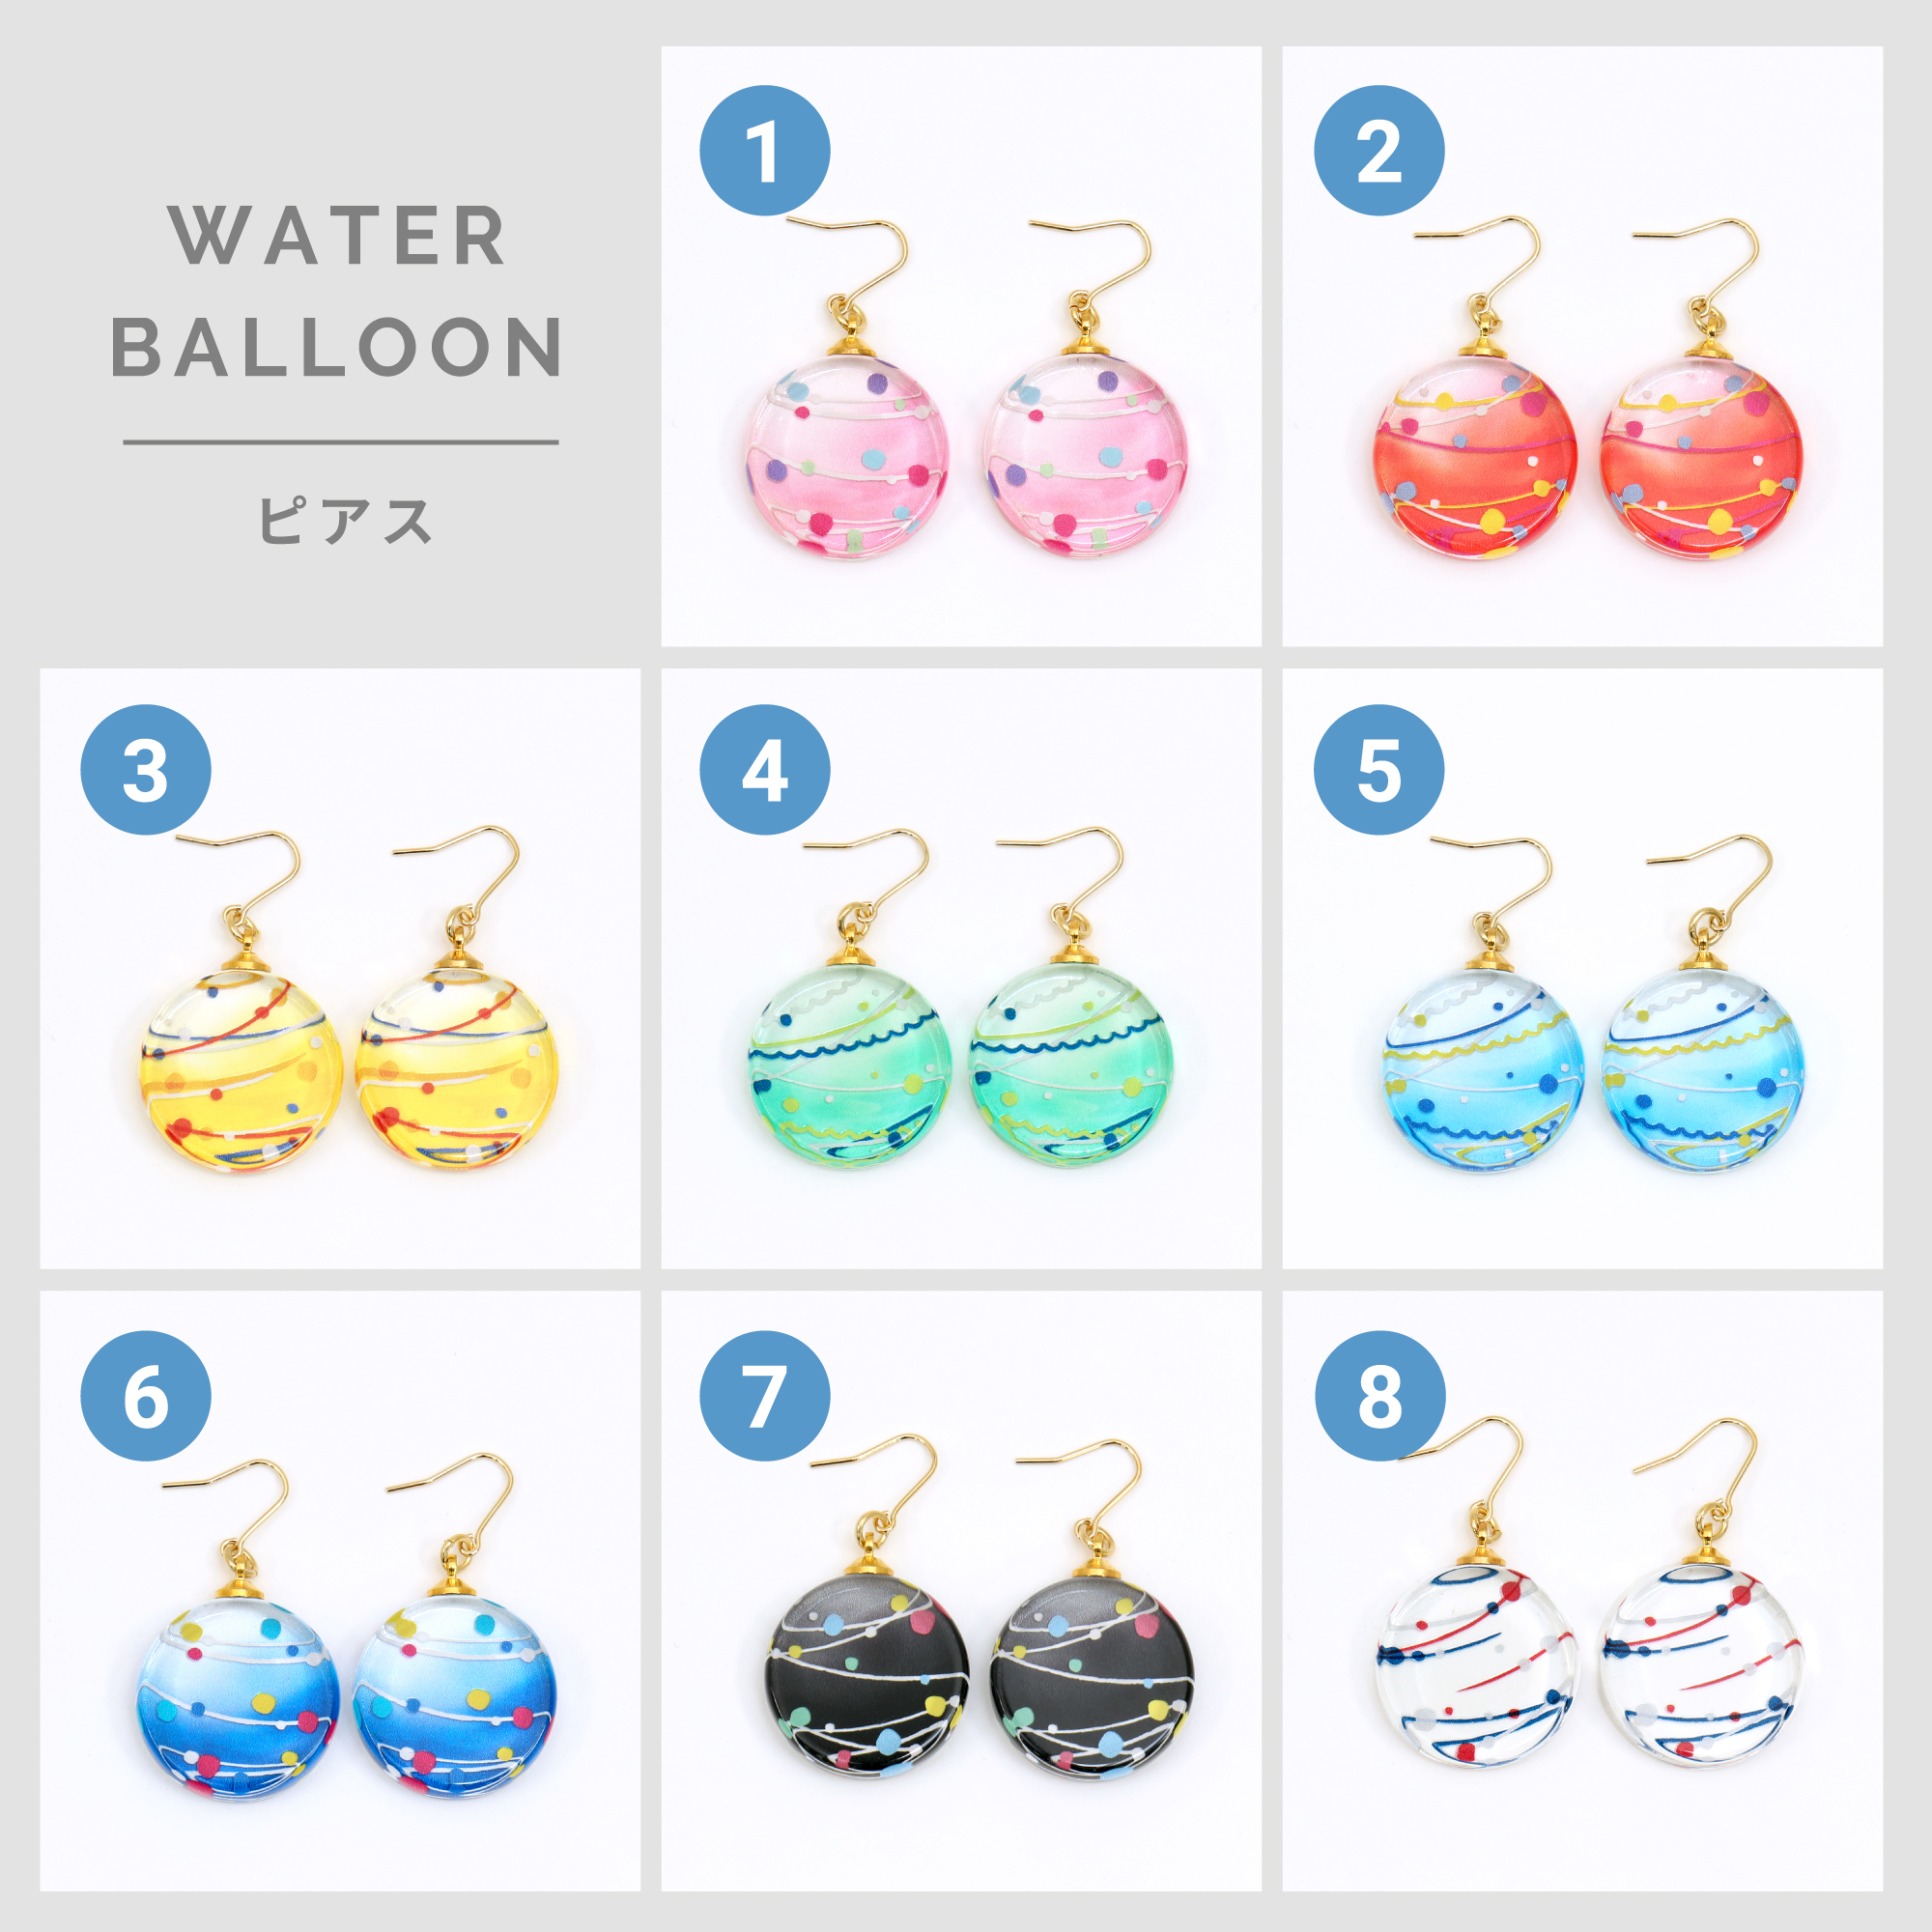 WATER BALLOON ピアス/イヤリング | 硝子十色のプレゼント・ギフト通販